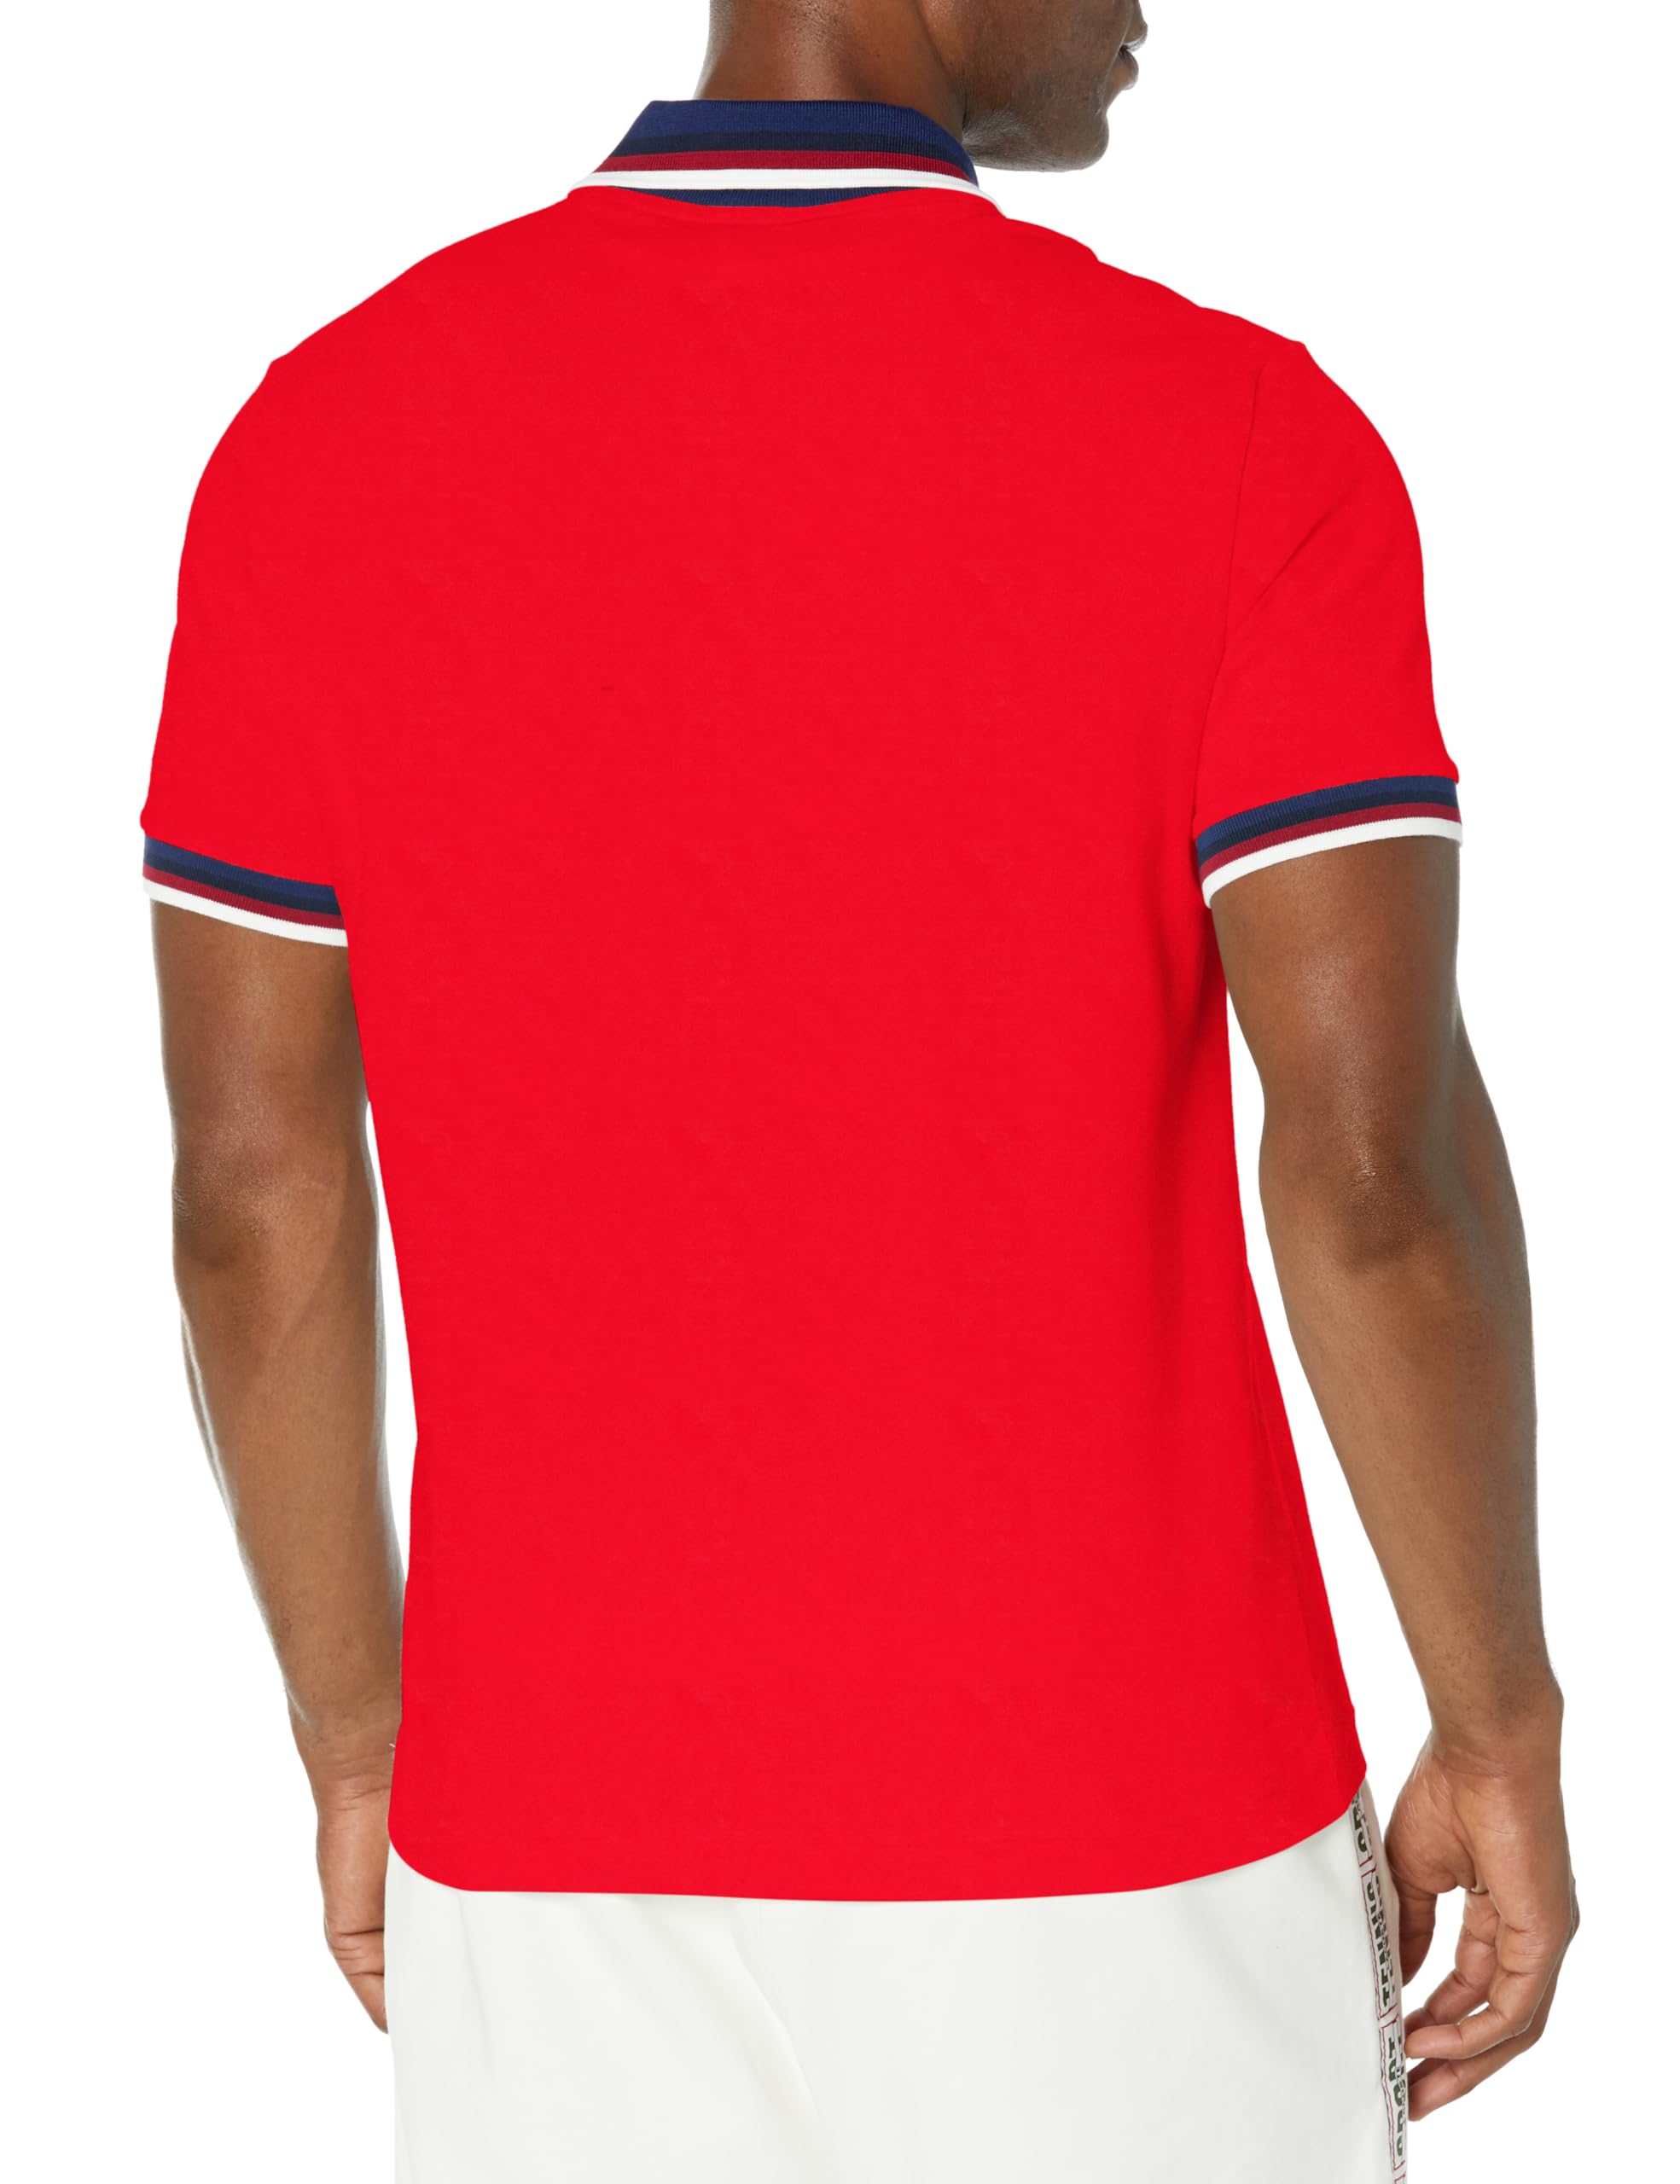 Lacoste Men's Regular Fit Stretch Piqué Polo Shirt